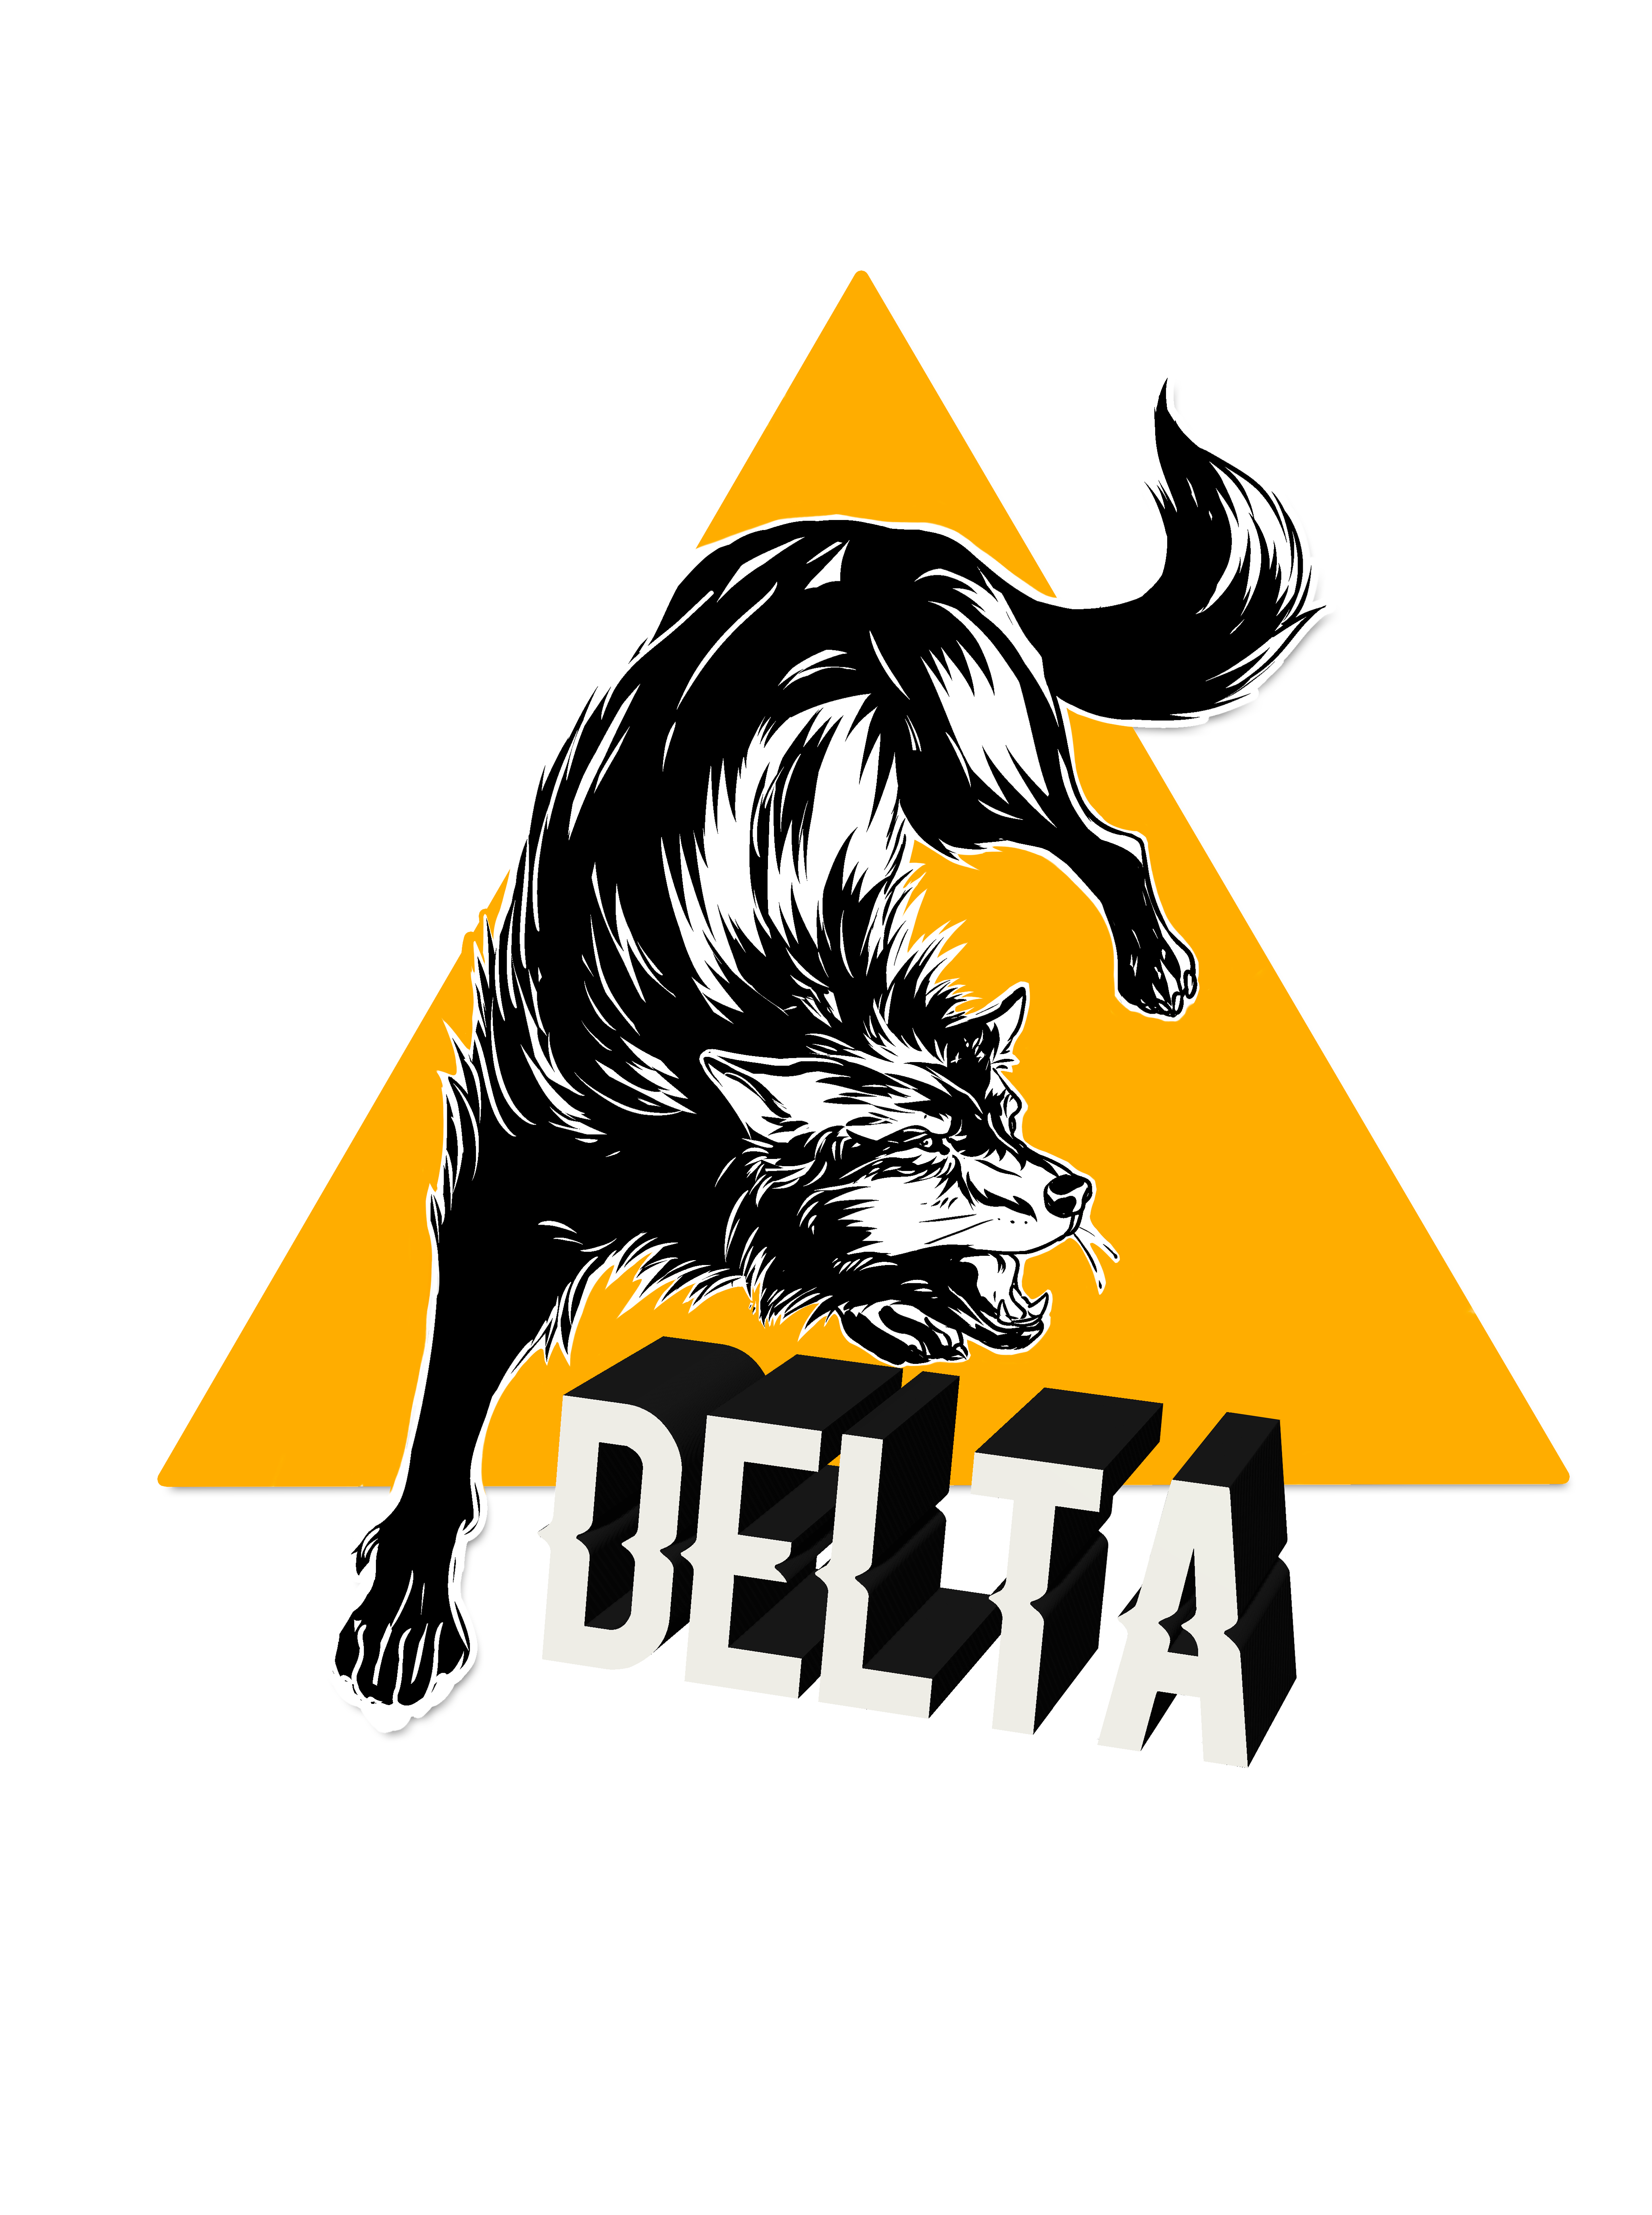 Delta filmmaker